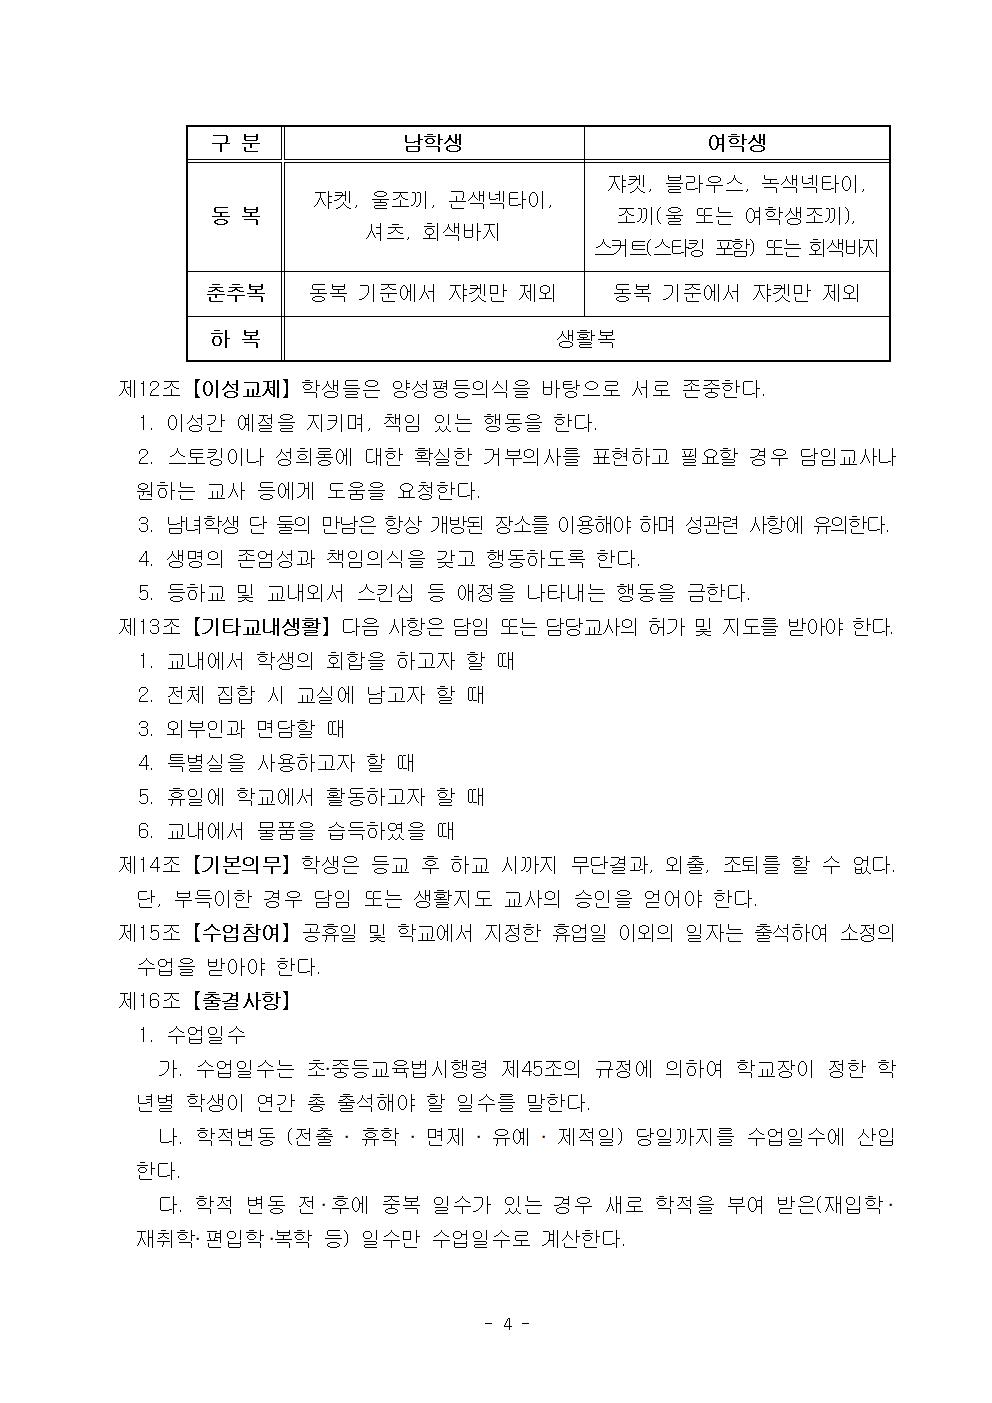 2022학년도 광혜원중학교 학생생활규정005